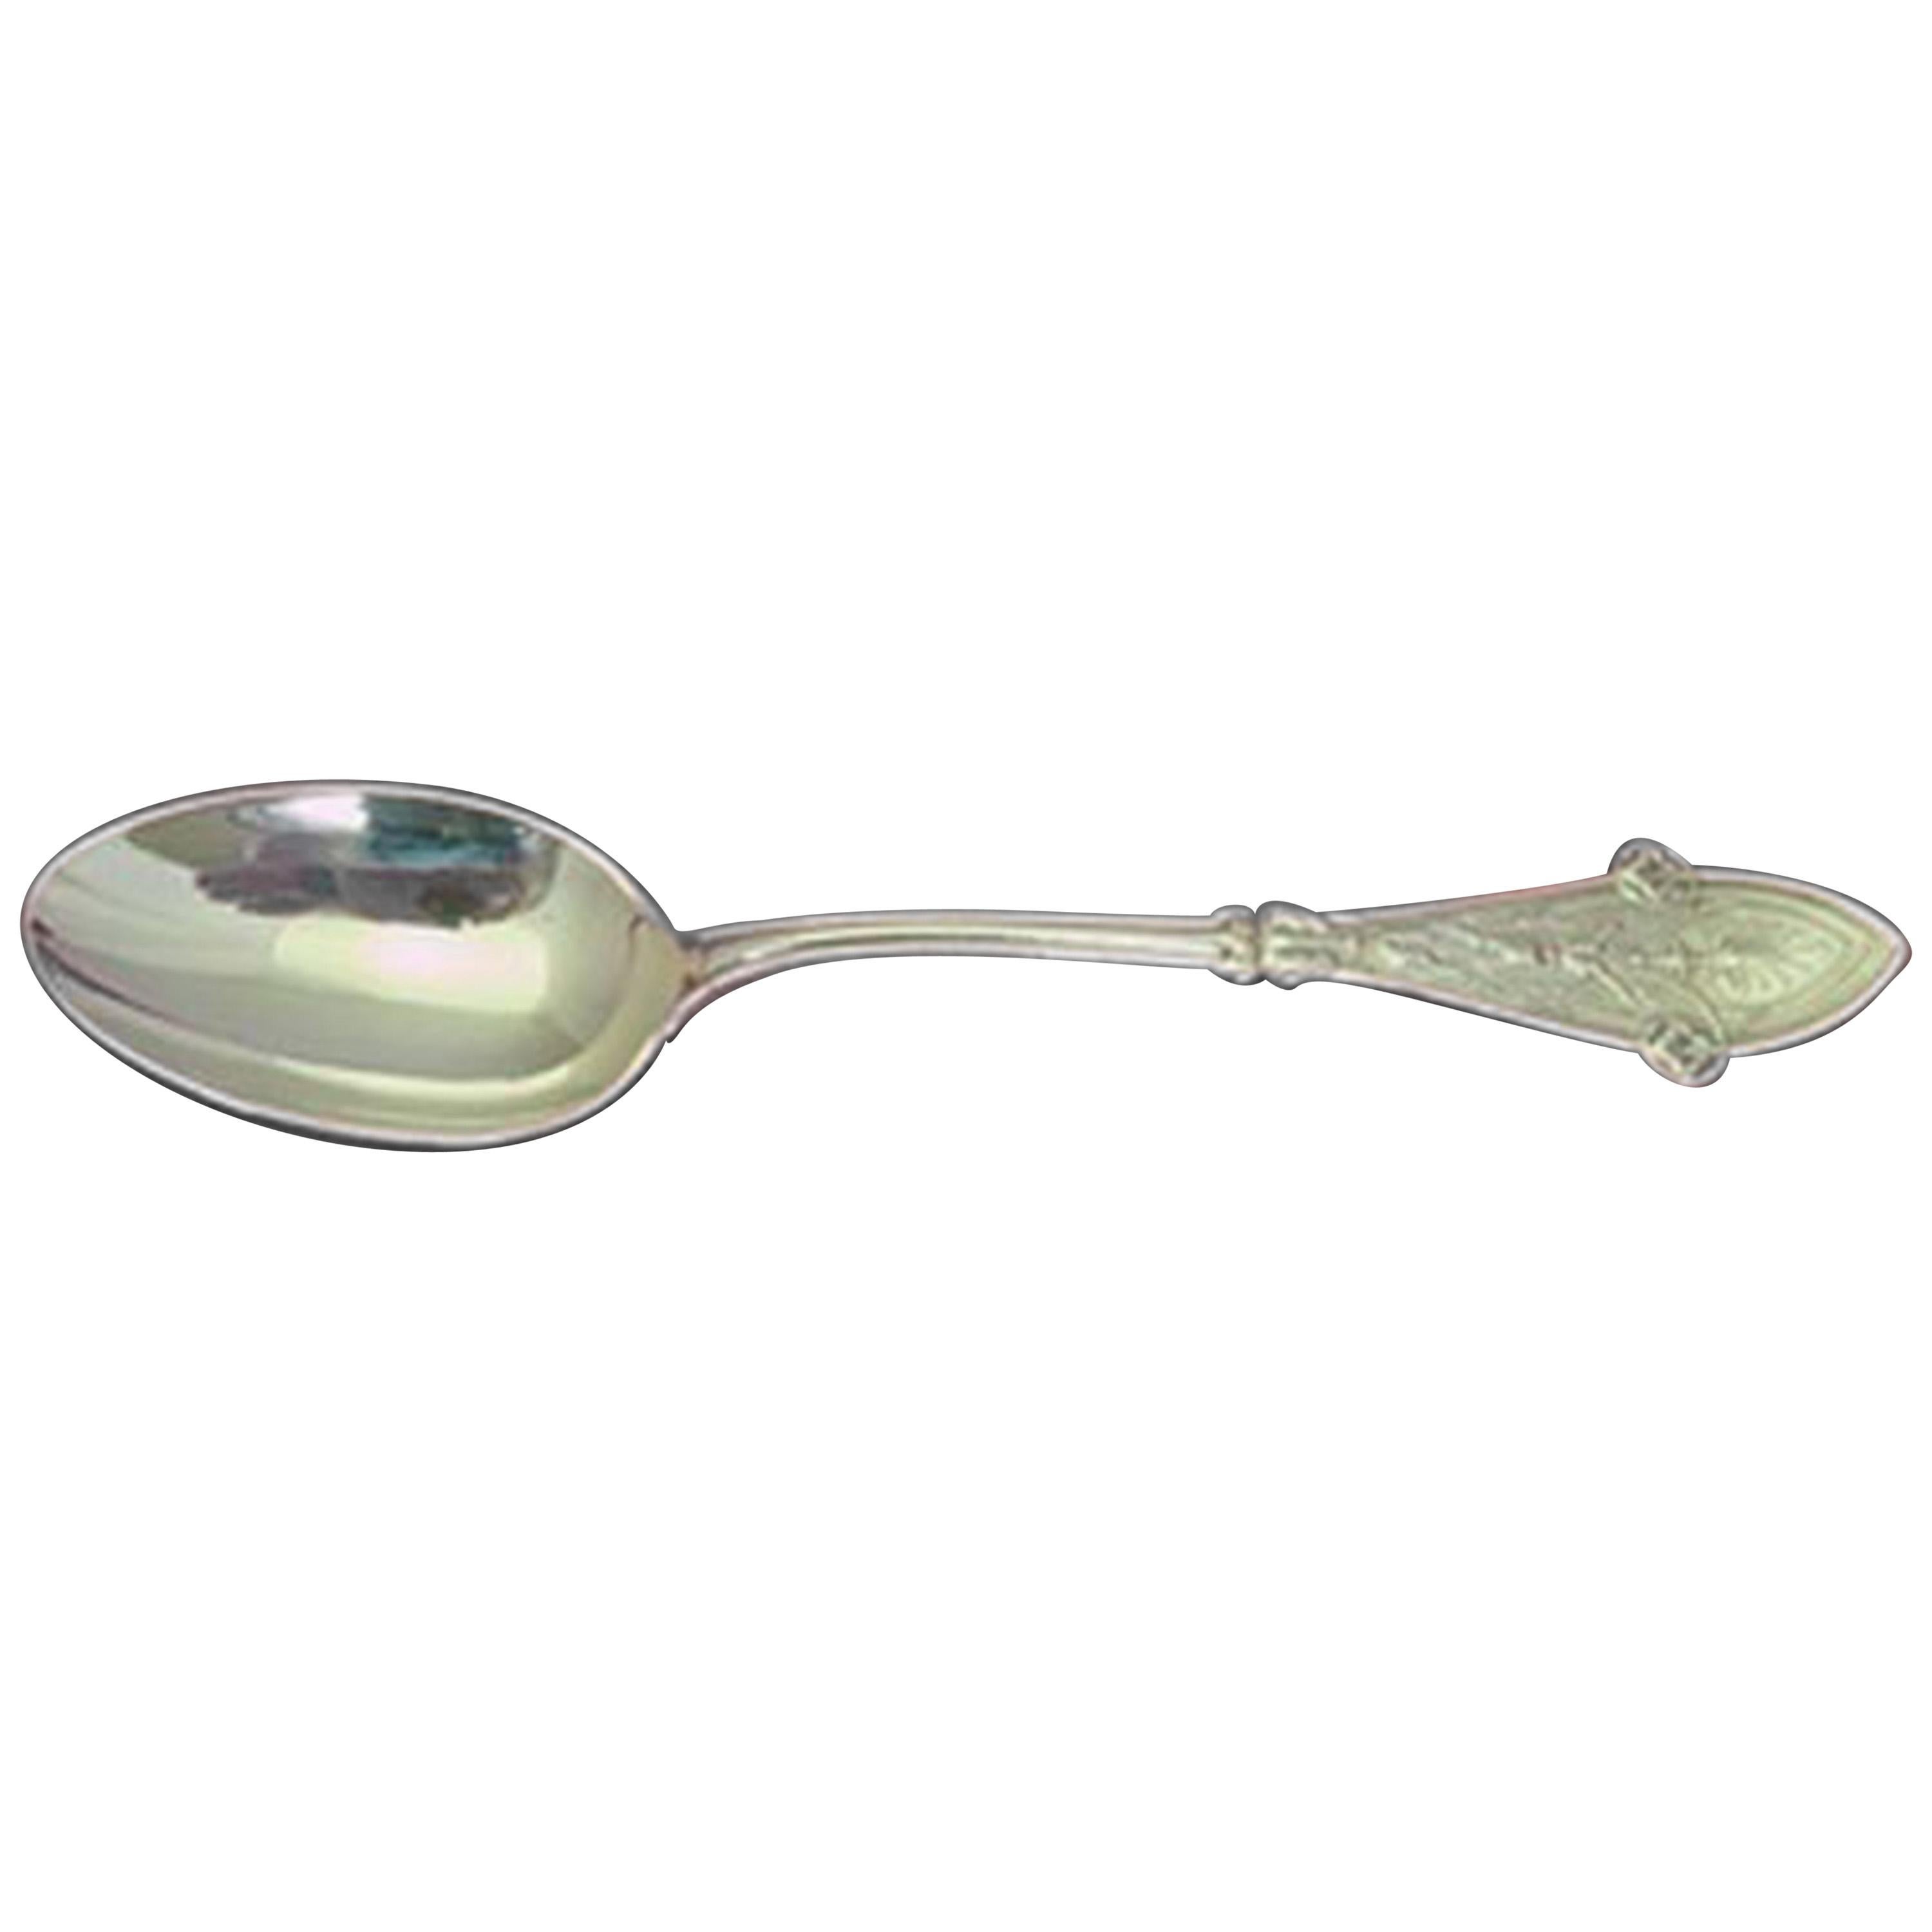 Italian by Tiffany & Co. Sterling Silver Teaspoon